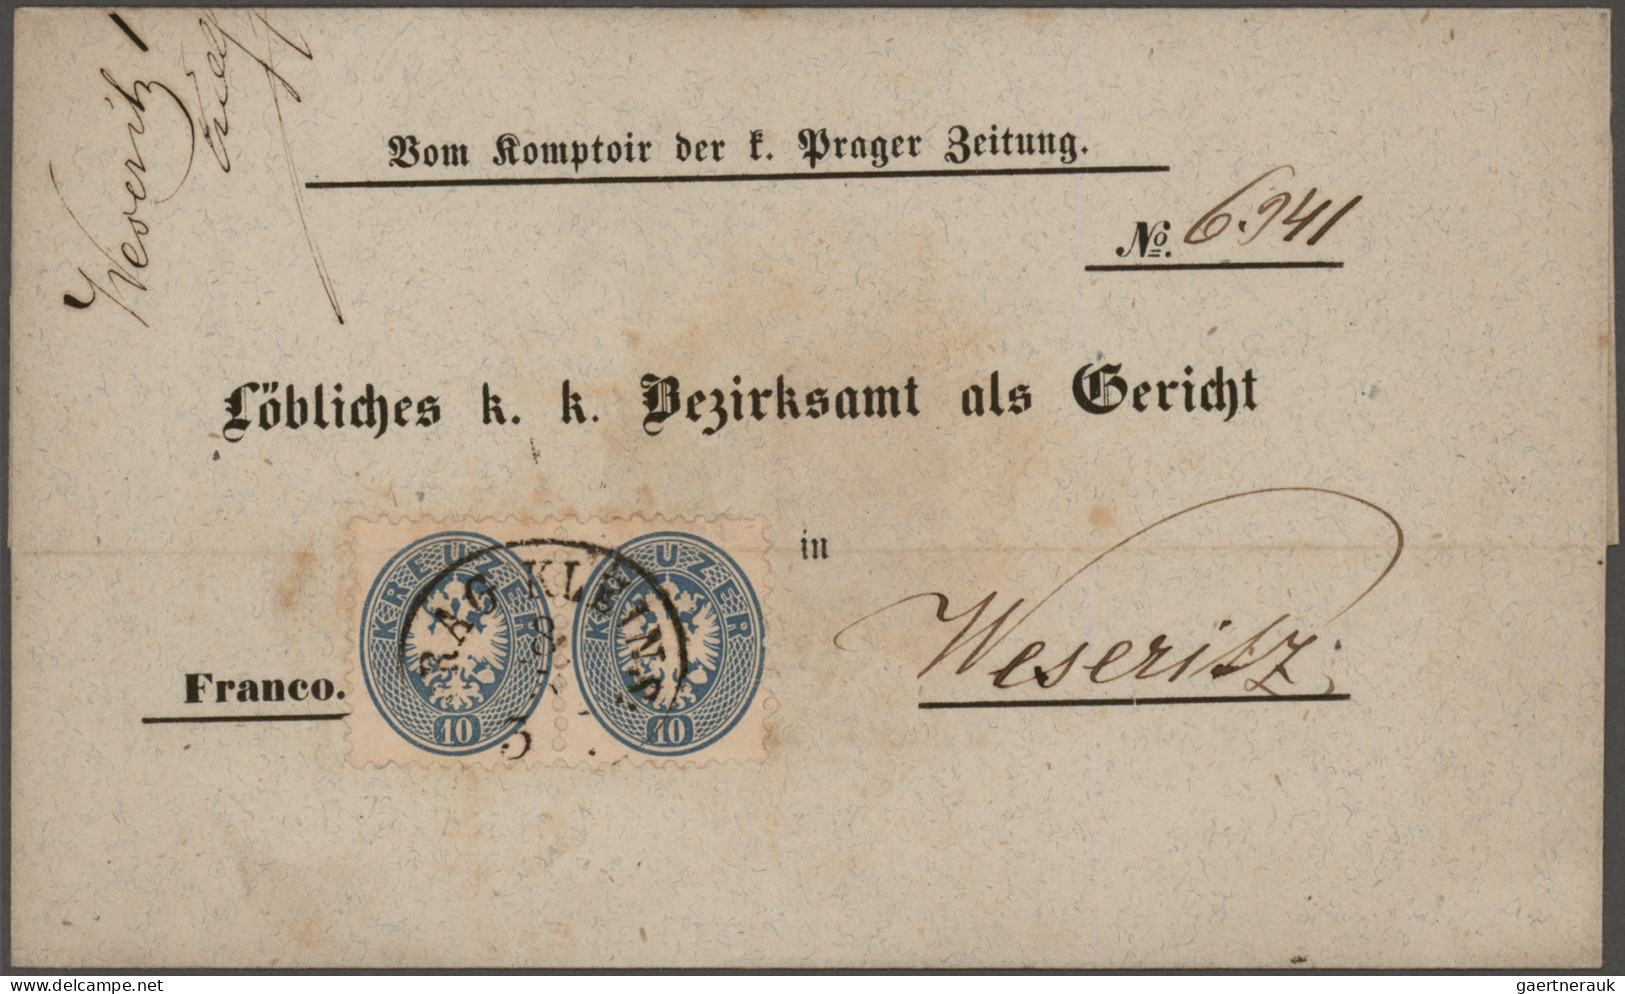 Österreich: 1850/1900 (ca), Klassik Konglomerat von 160 Briefen mit dekorativen